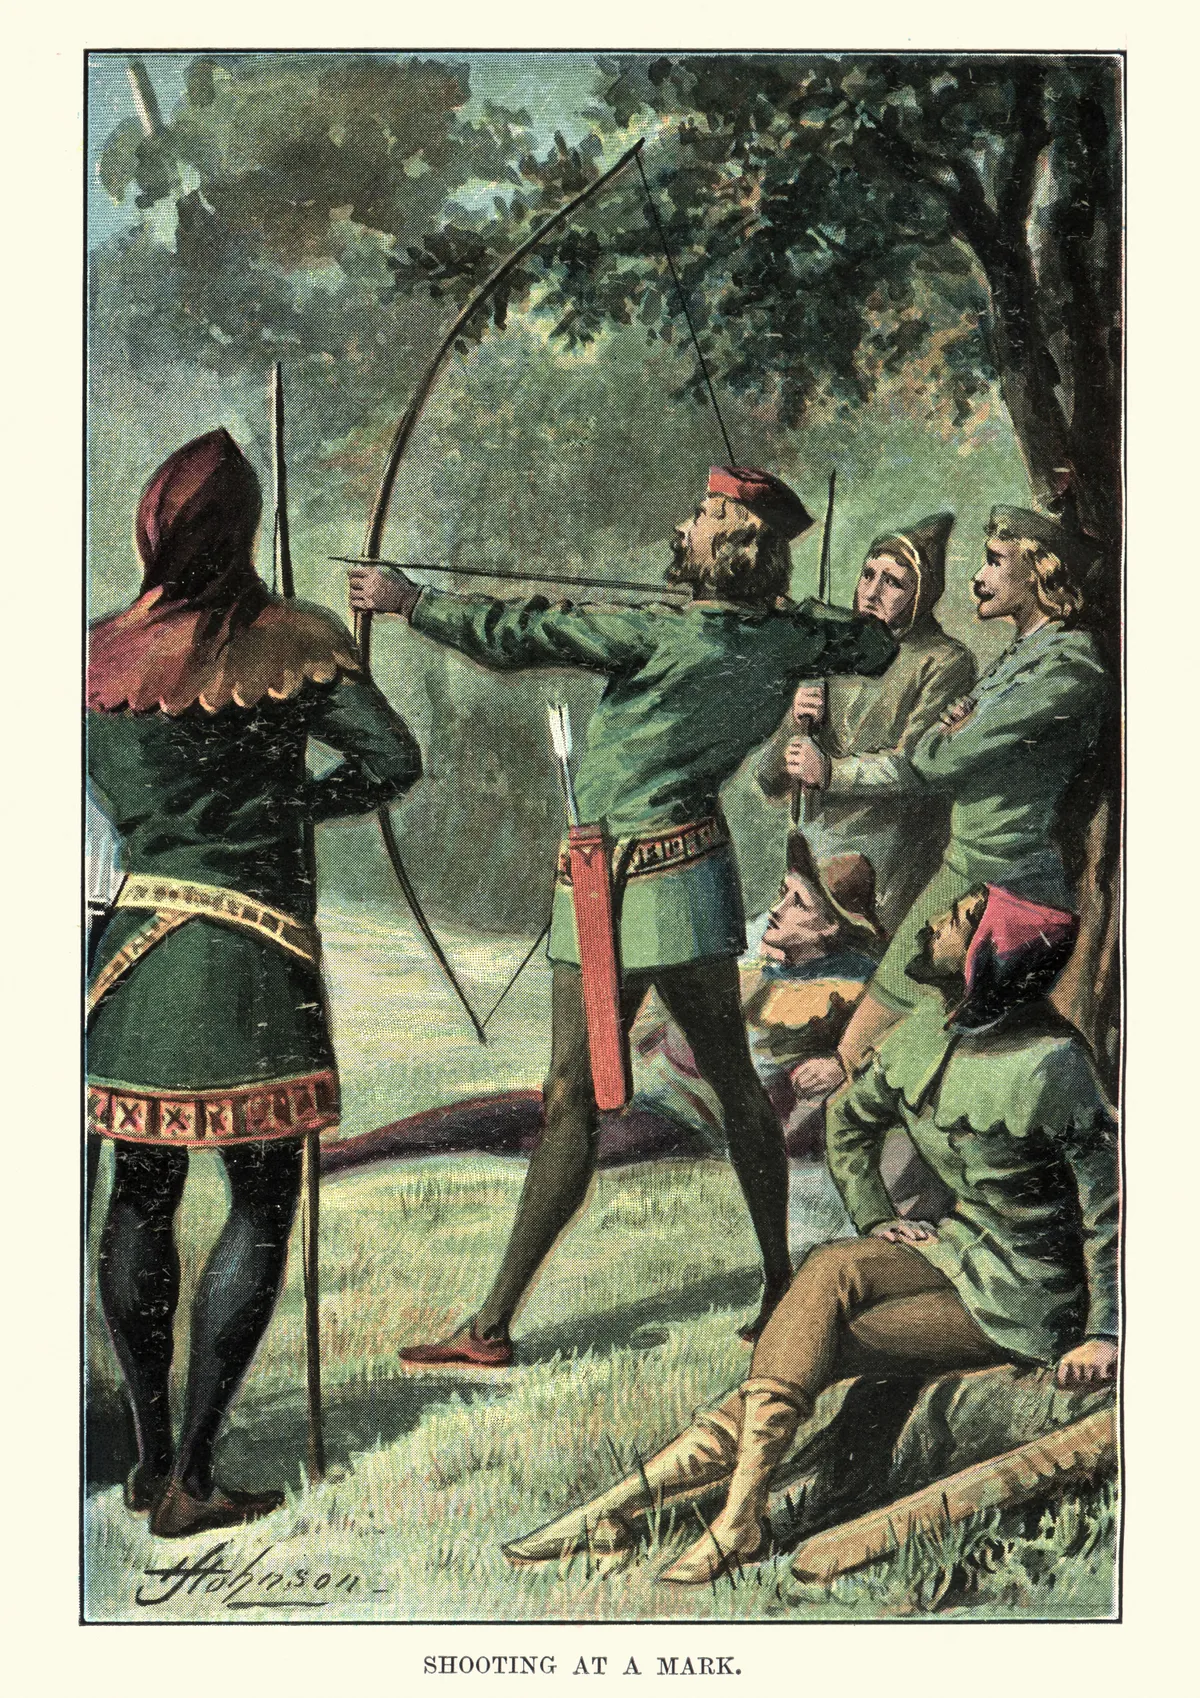 Vintage Robin Hood poster